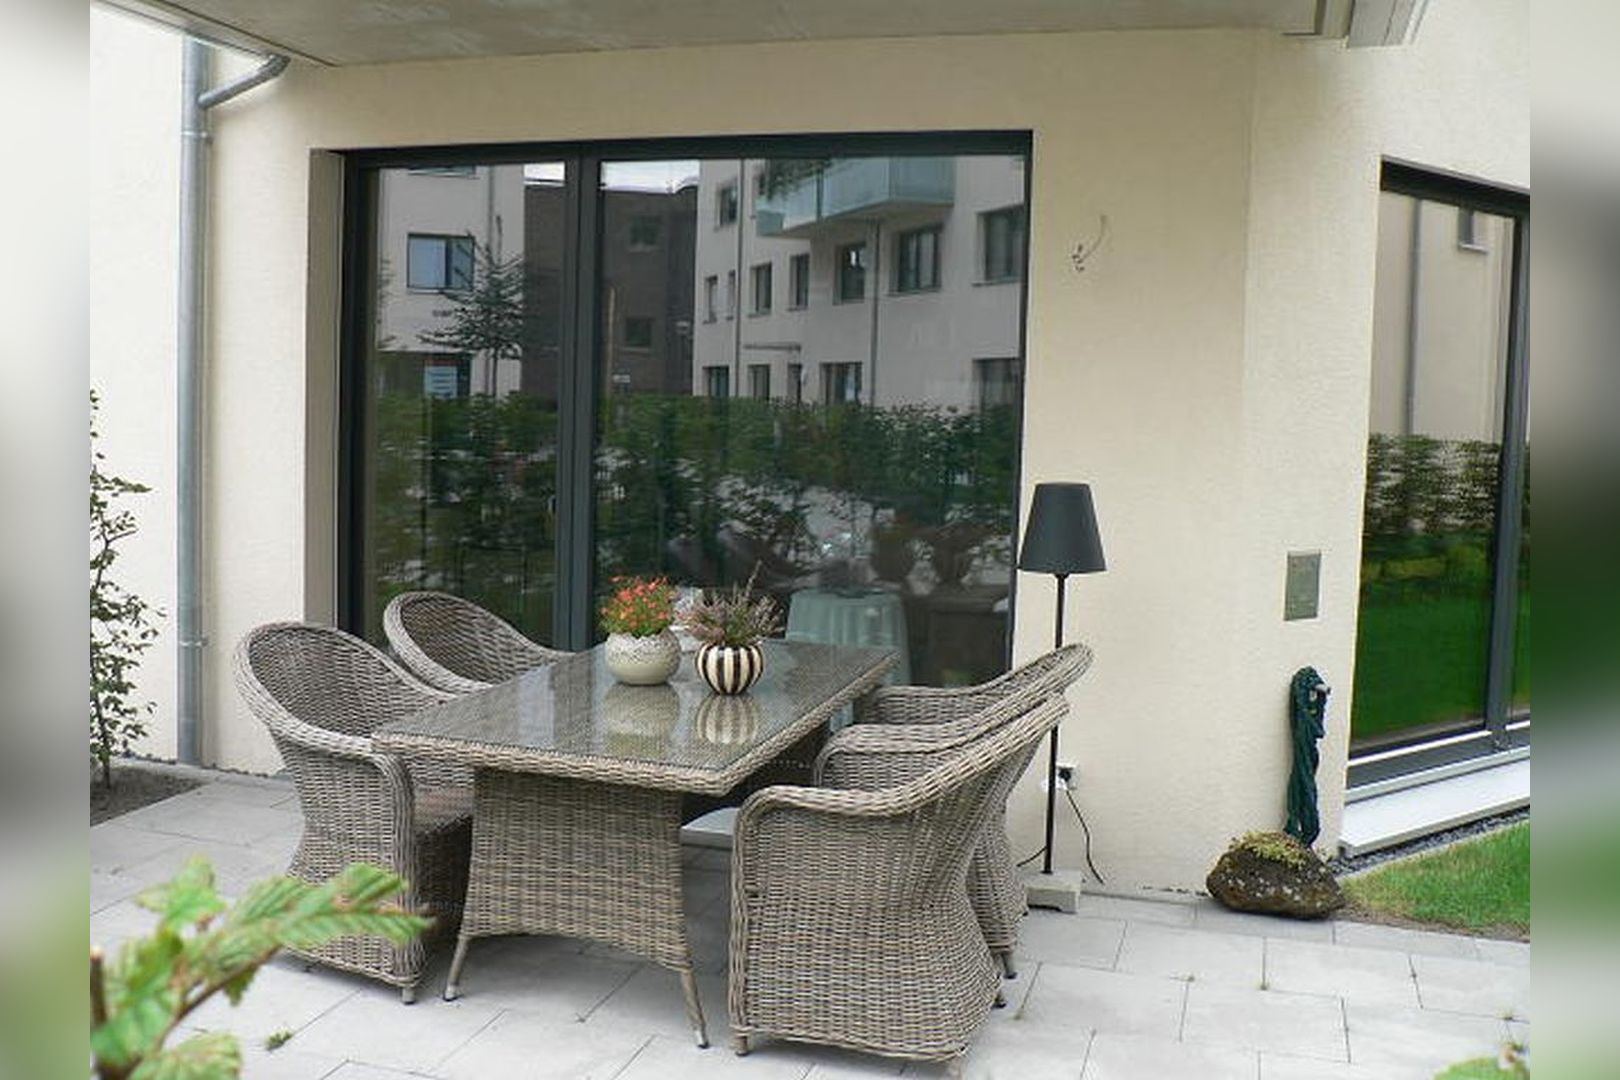 Immobilie Nr.Hilden 005 - 2-Raum-Maisonette-Wohnung mit Terrasse & Gärtchen - Bild 4.jpg